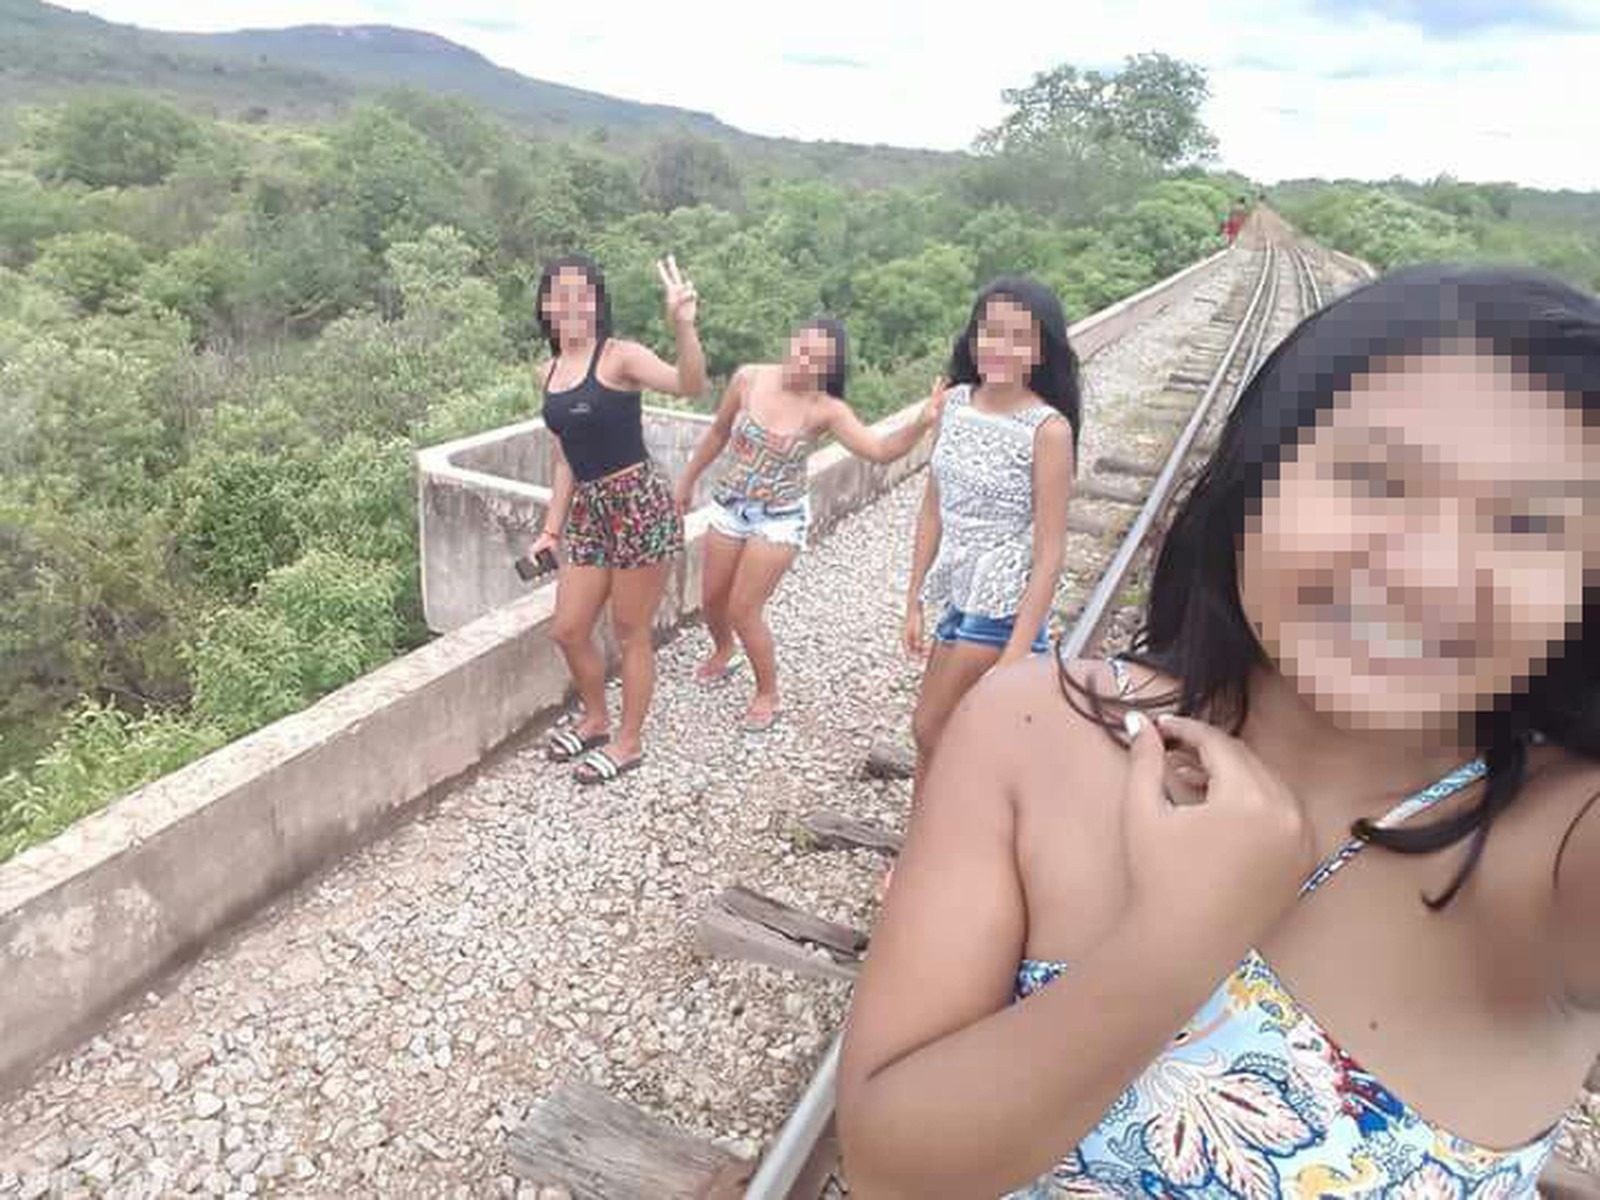 Adolescentes ficaram feridas ao cair de ponte durante selfie em Castelo do Piauí (Foto: Divulgação/Polícia Civil)
